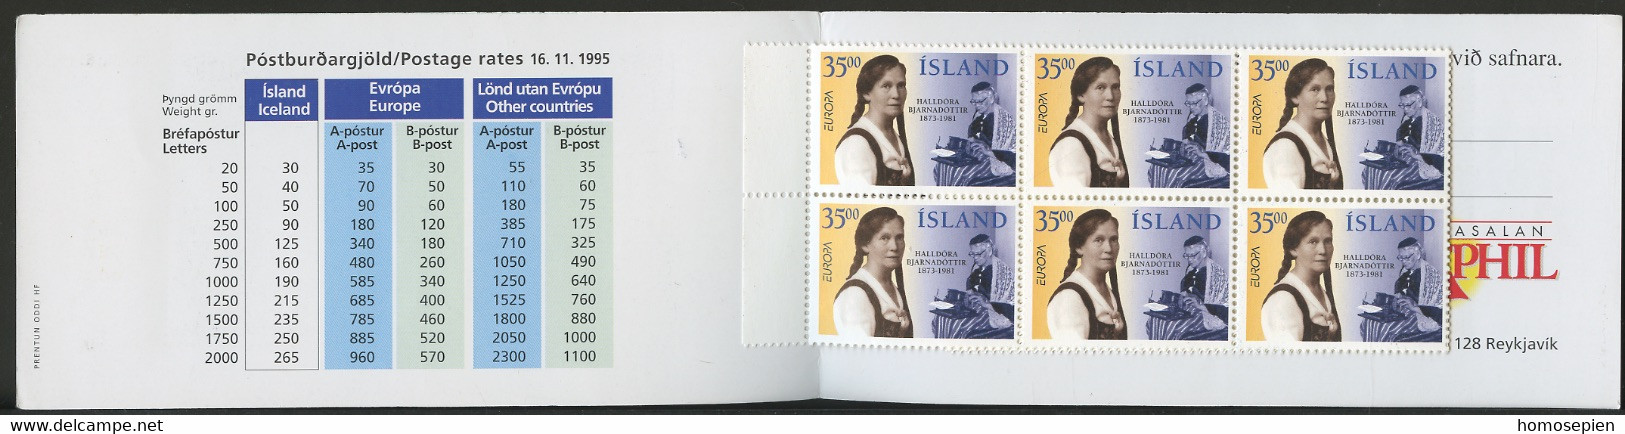 Islande - Island - Iceland Carnet 1996 Y&T N°C797 - Michel N°MH844 *** - 35k EUROPA - Booklets